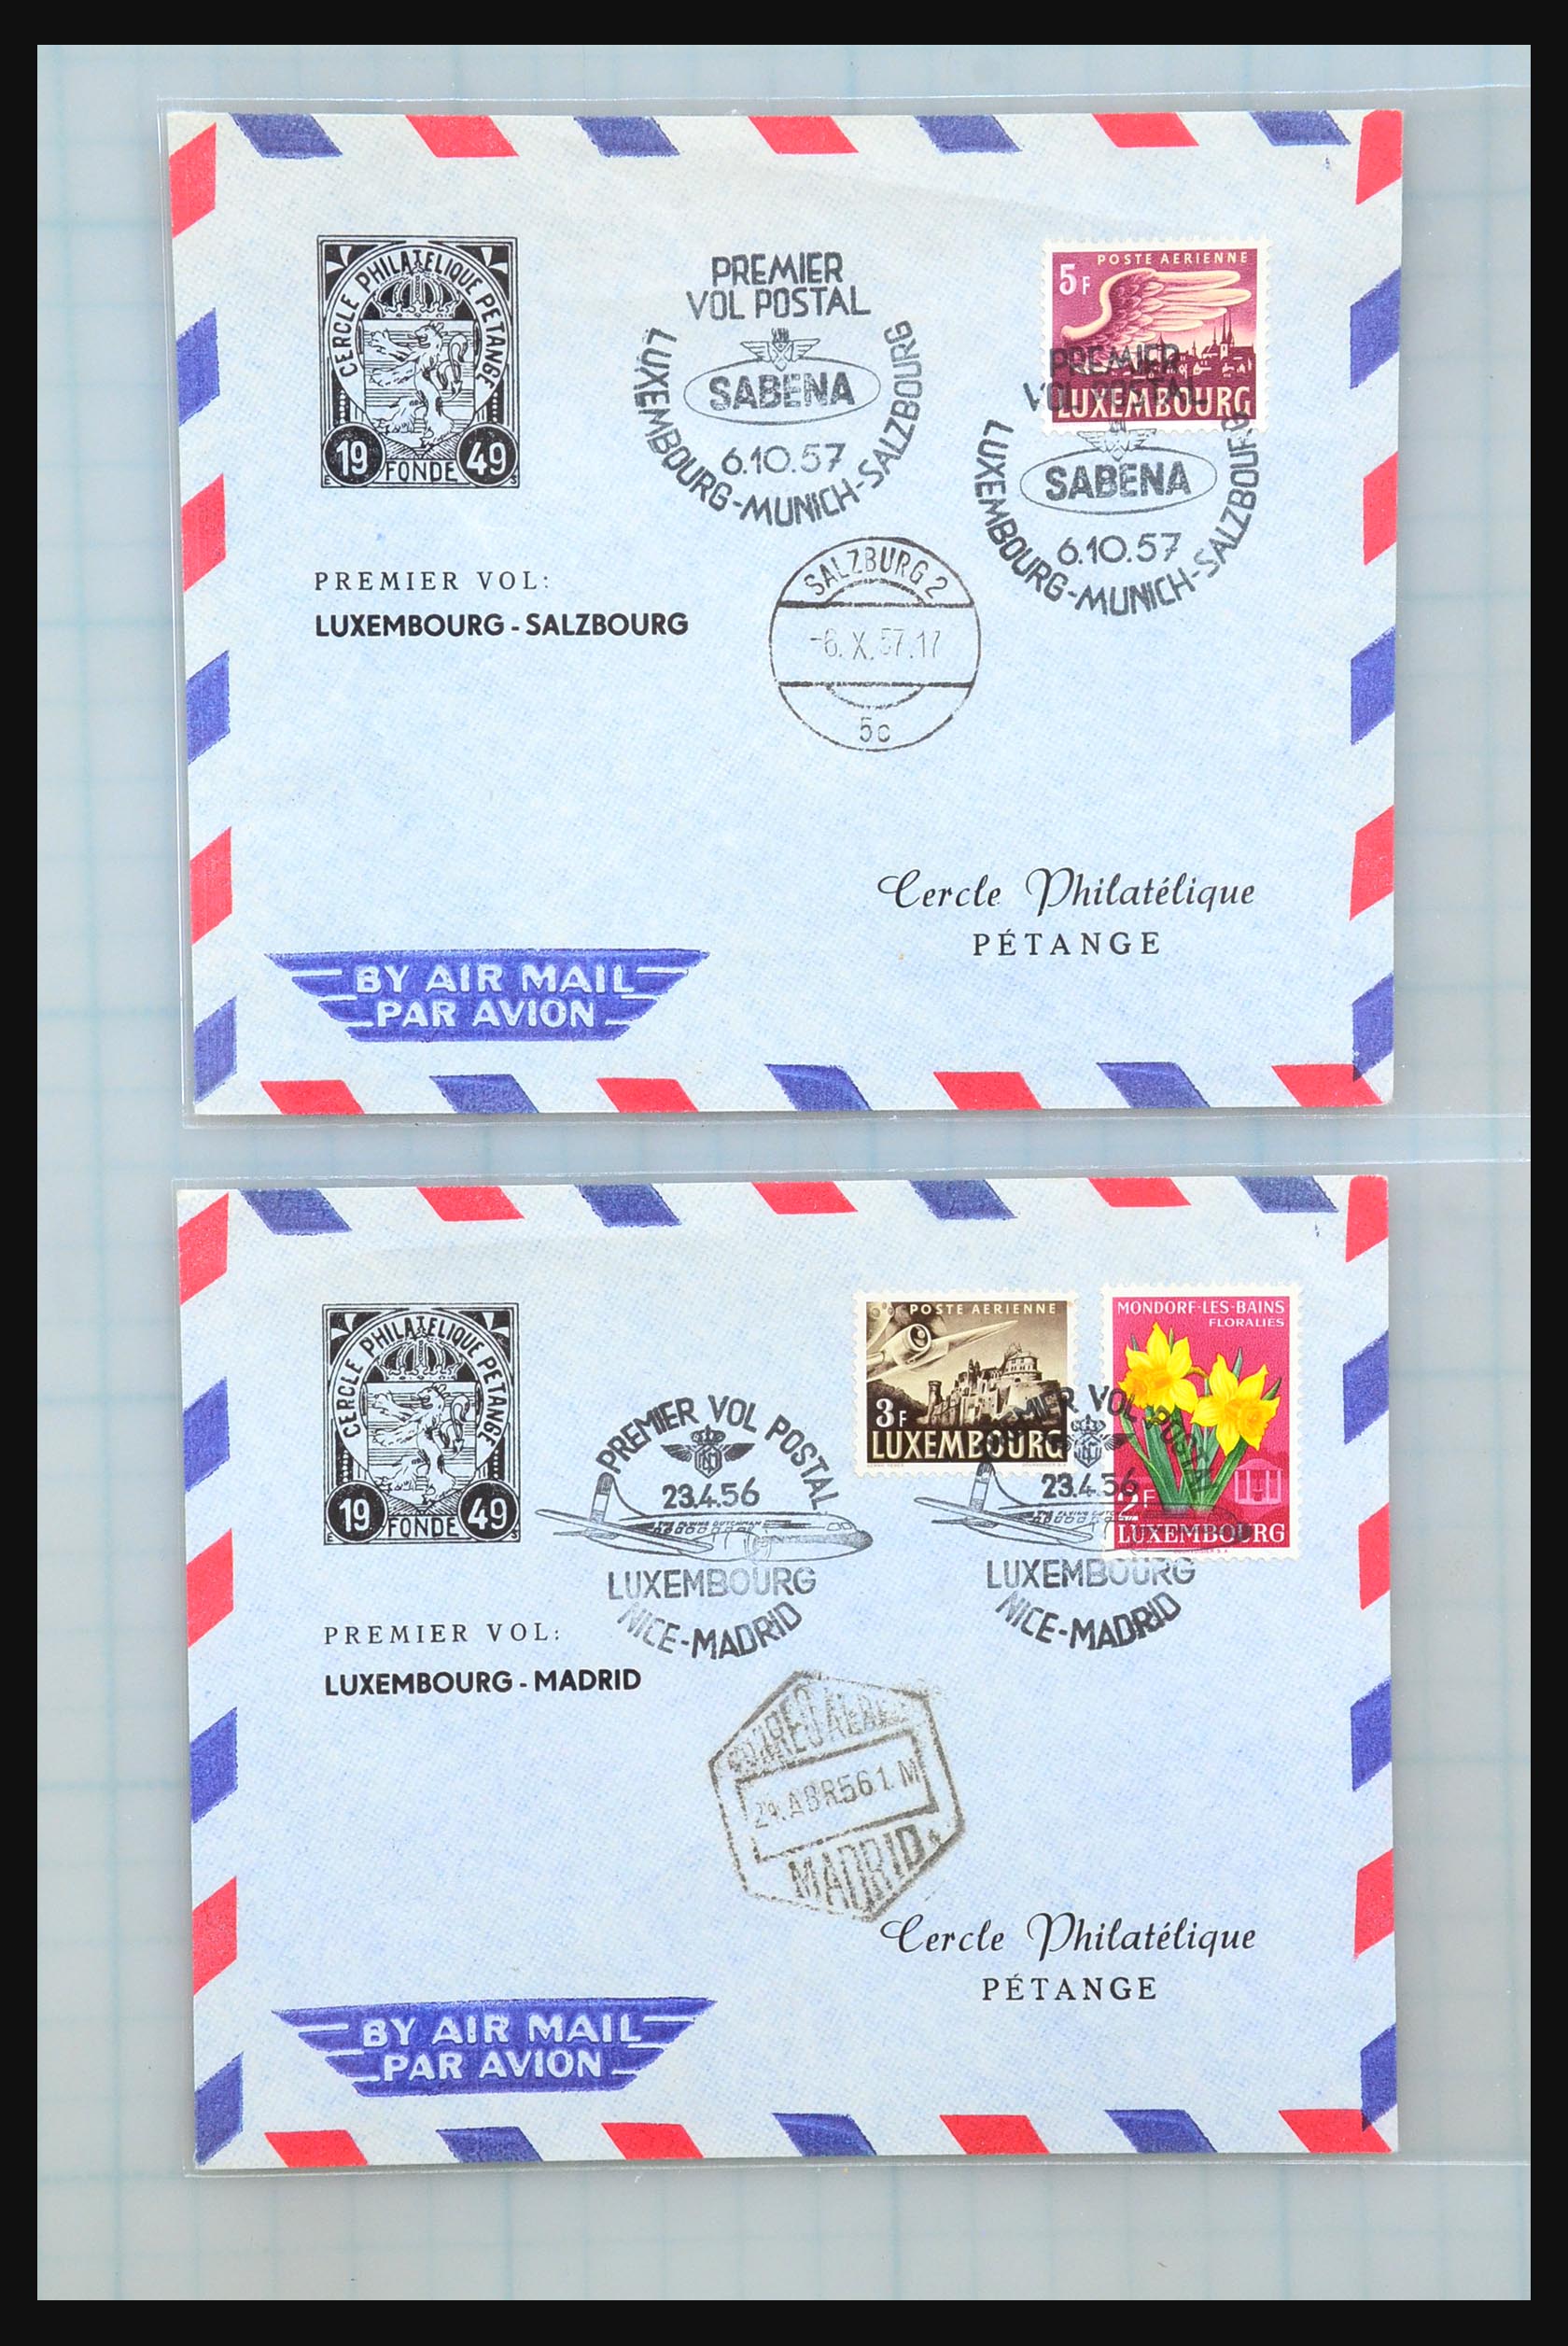 31358 070 - 31358 Portugal/Luxemburg/Griekenland brieven 1880-1960.